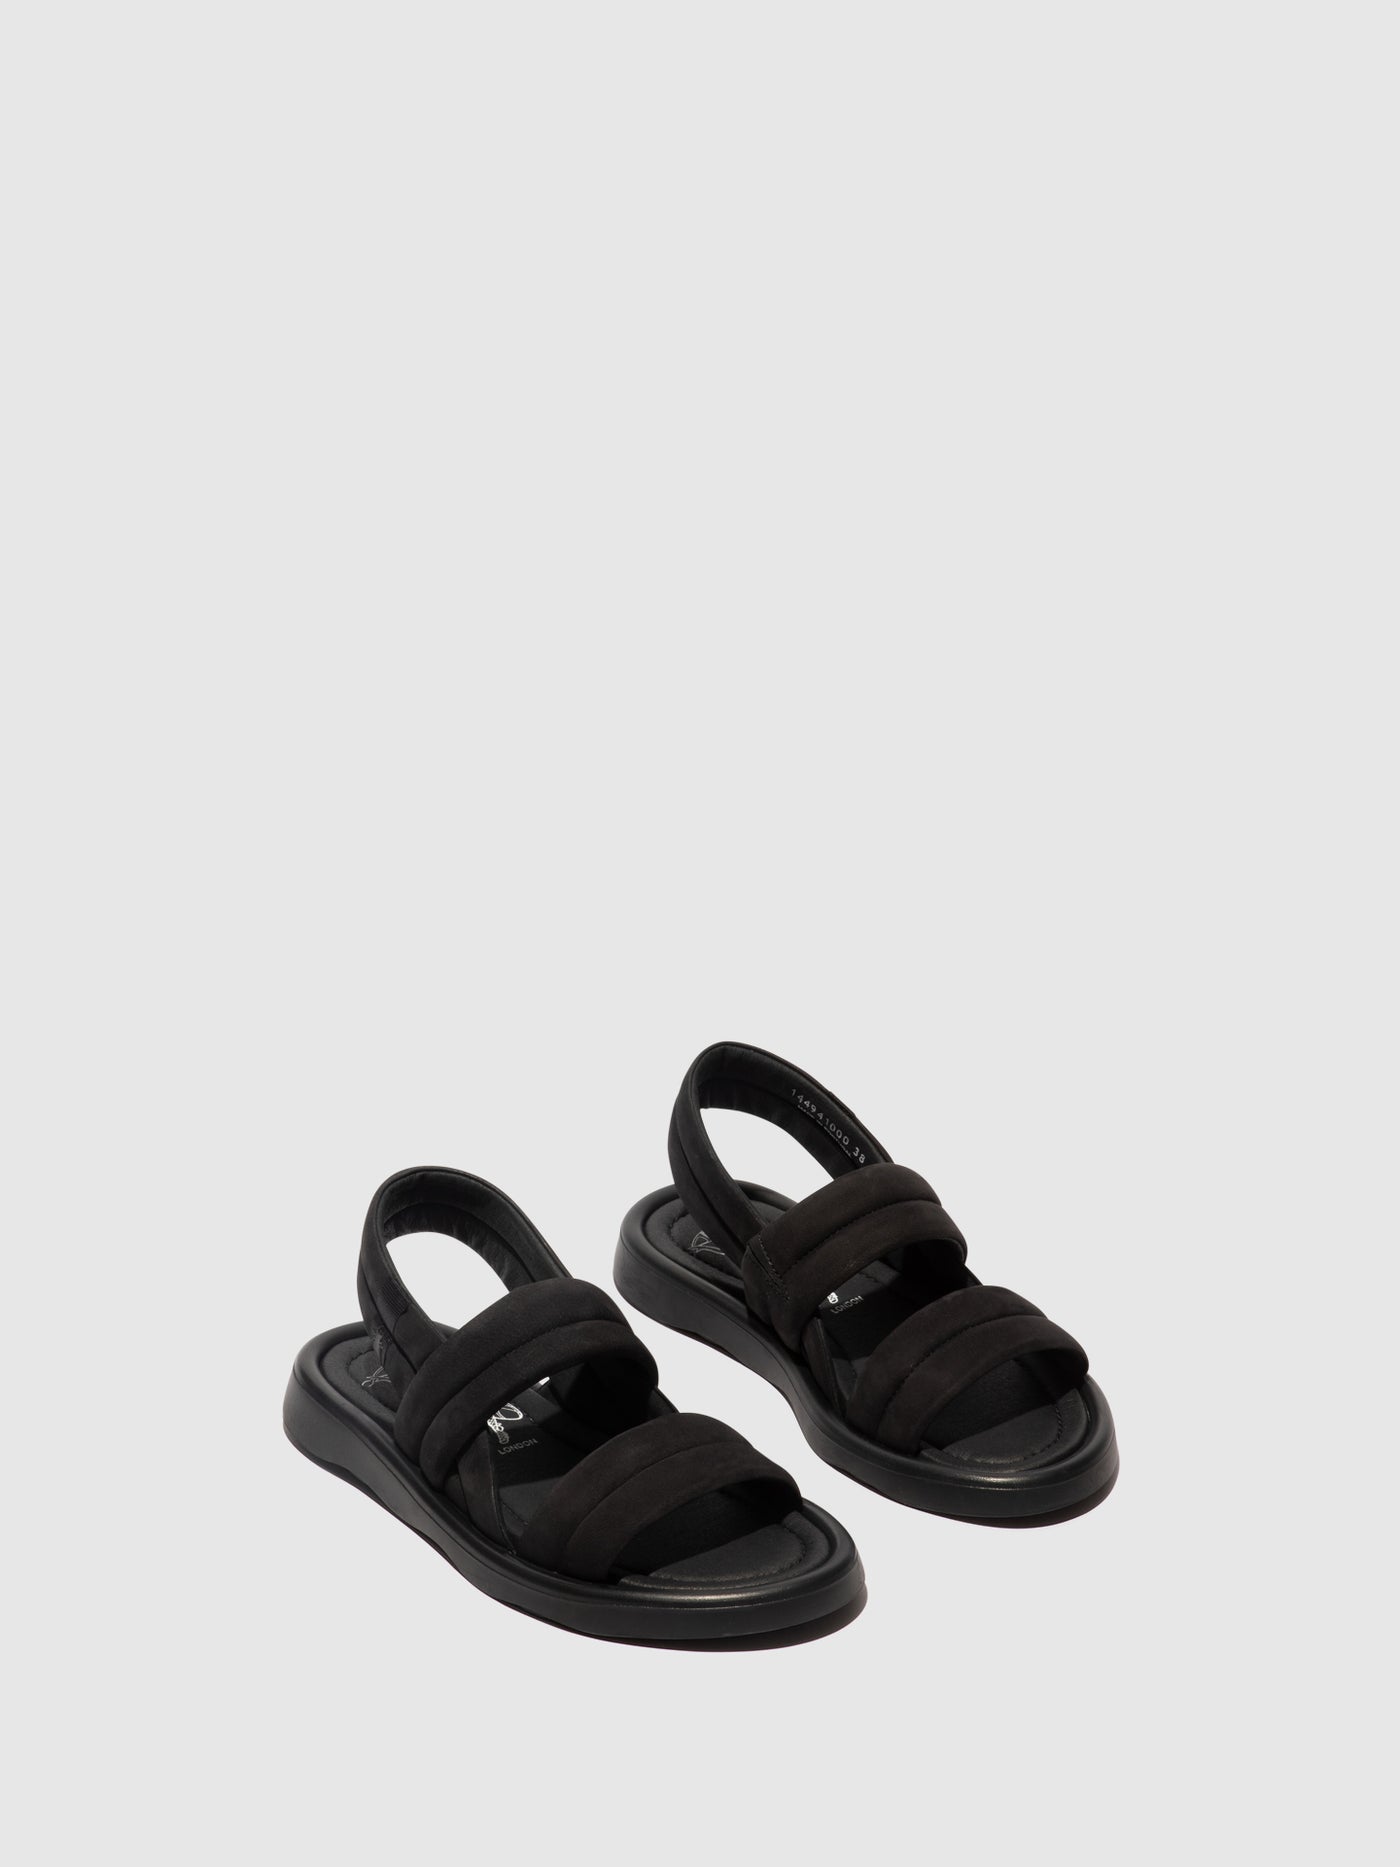 Sling-Back Sandals TOFY941FLY BLACK